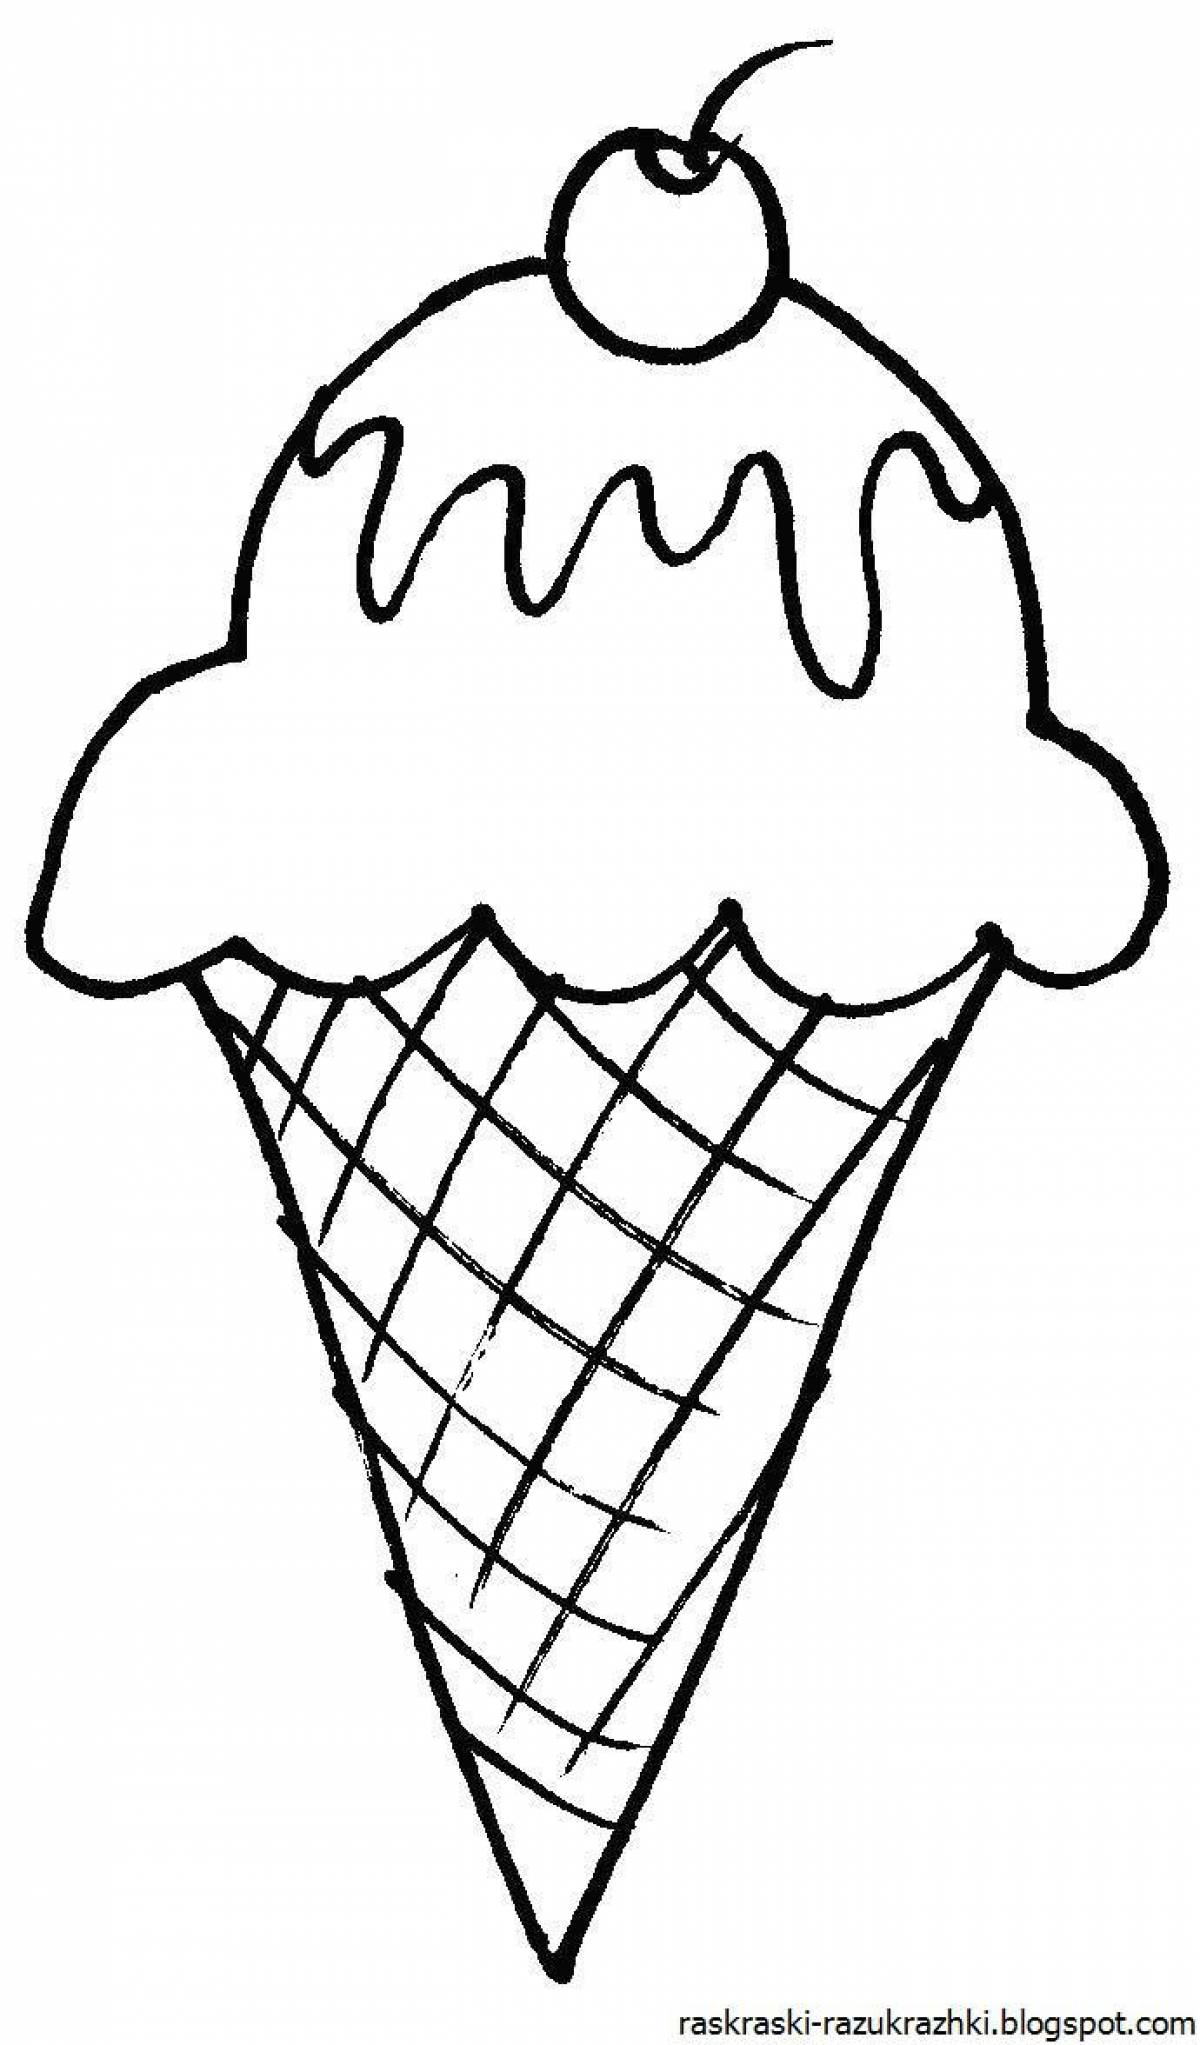 Раскраска мороженки. Раскраска мороженое. Мороженое раскраска для детей. Раскраска для девочек мороженое. Мороженое для раскрашивания детям.